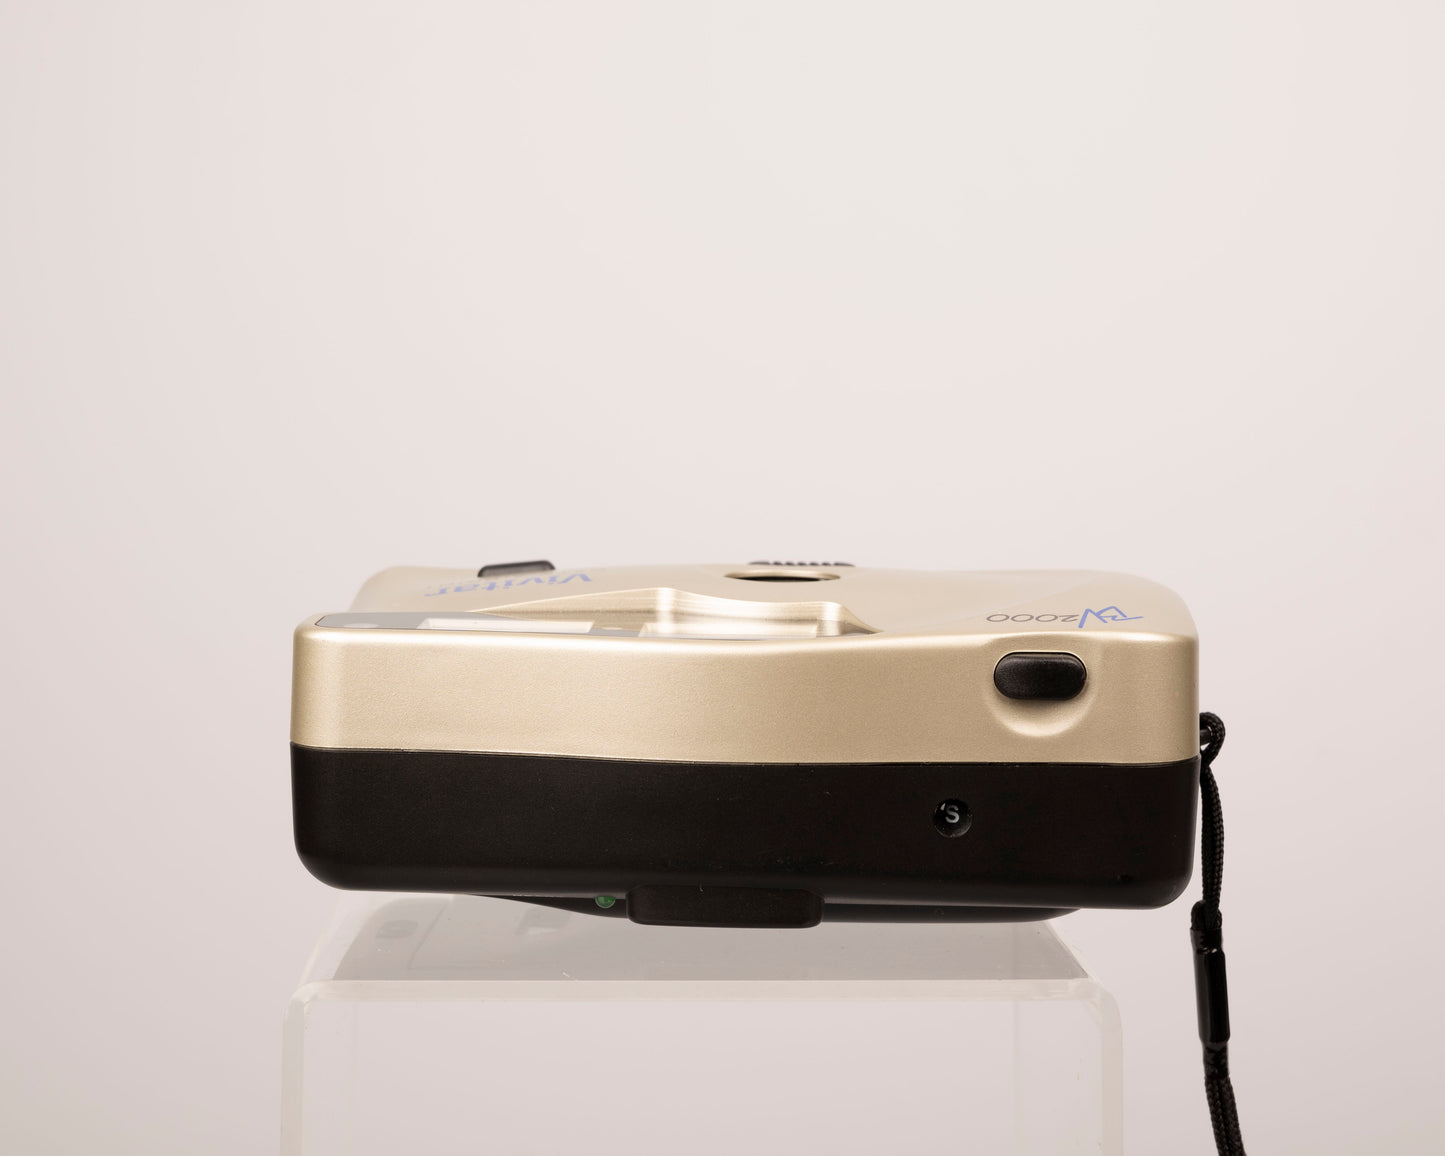 Vivitar BV2000 Date-A-Print 35mm film camera w/ case